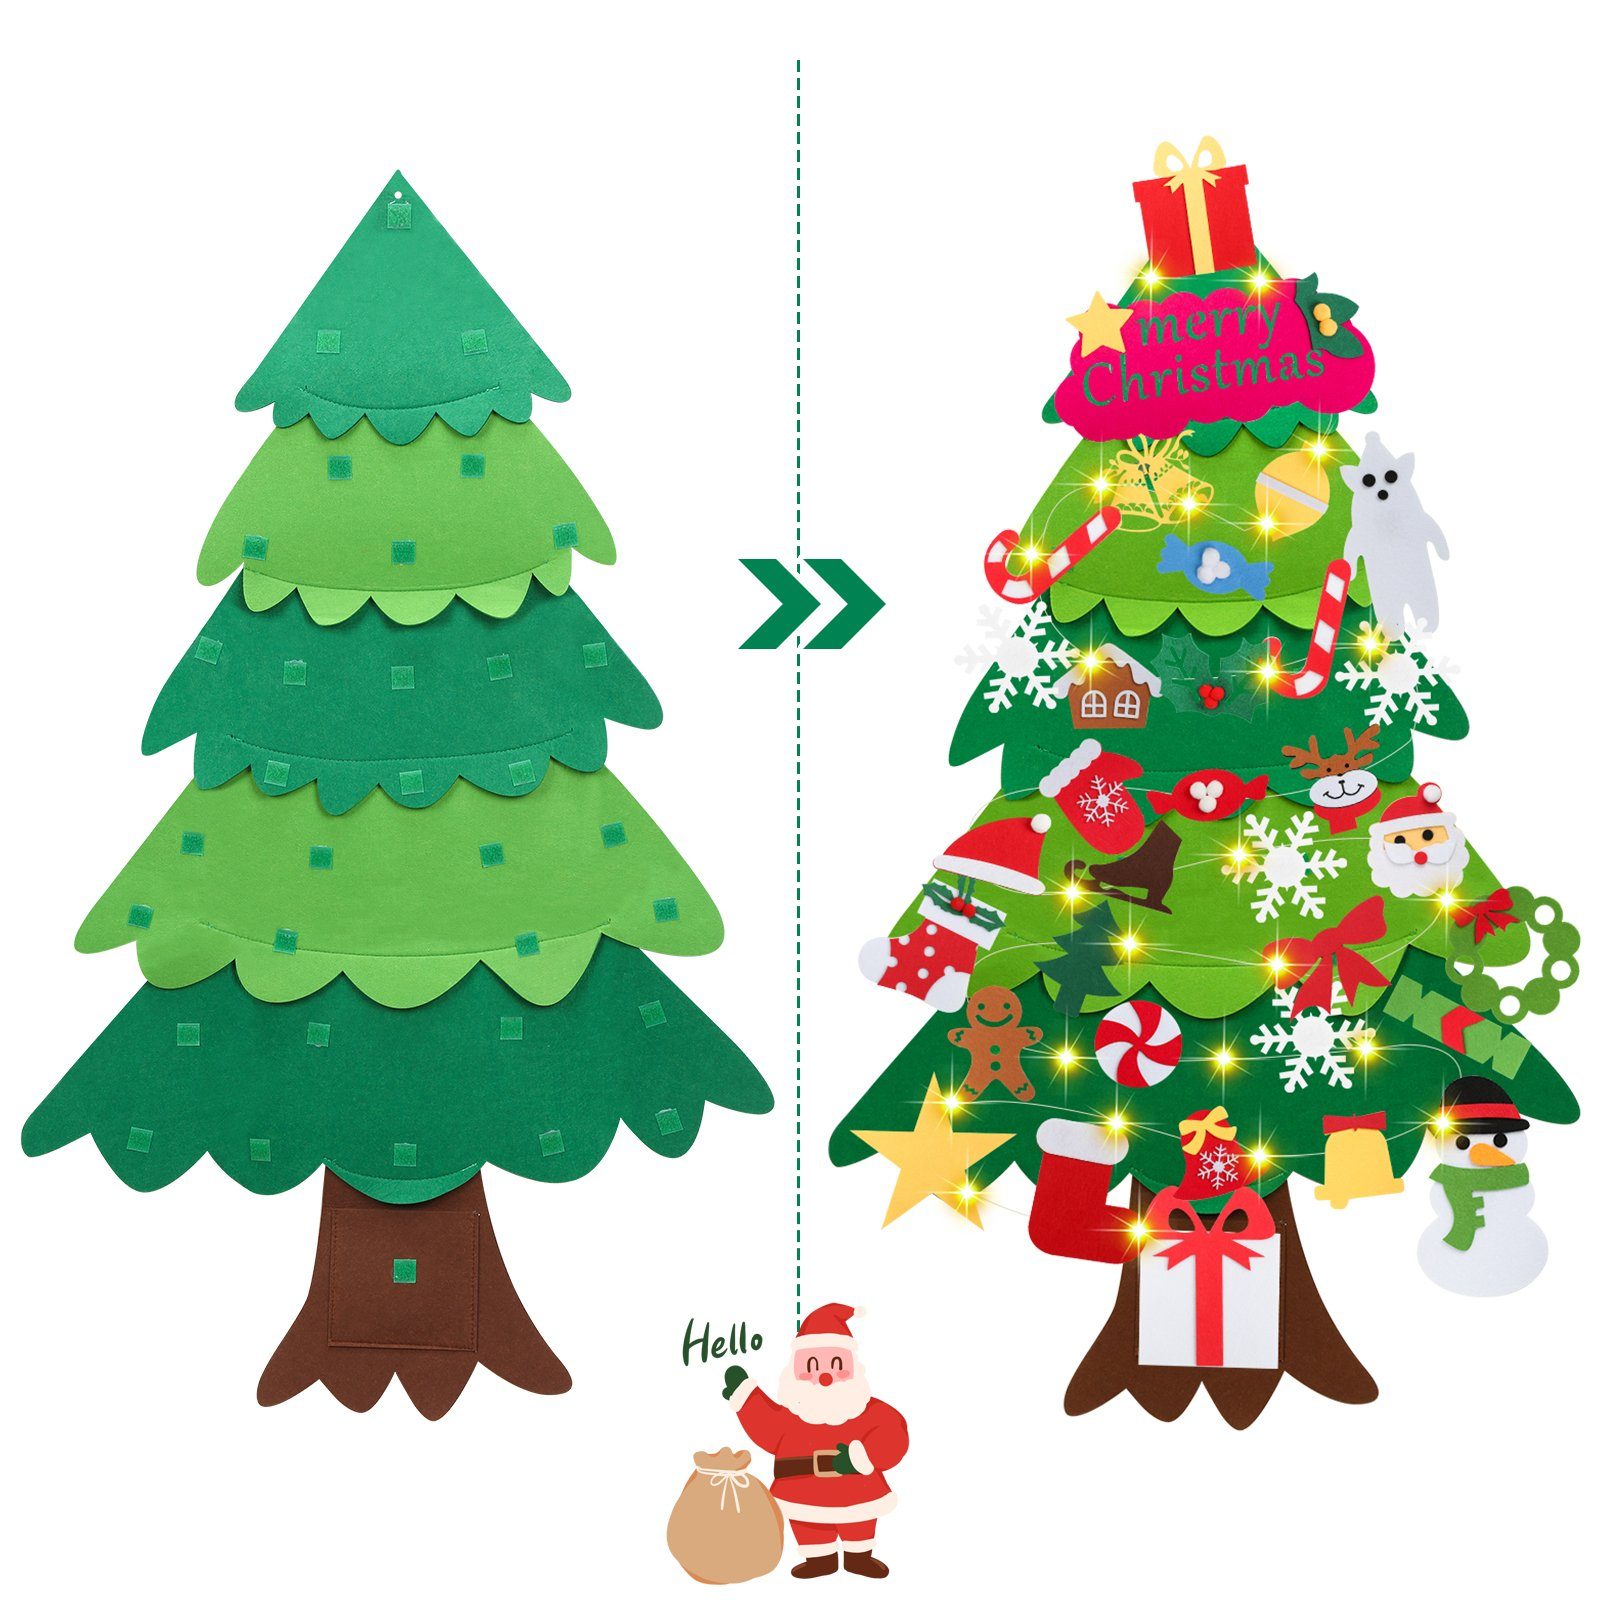 Filz Weihnachtsbaum DIY Lichterkette Gimisgu 5m Weihnachtsbaum Künstlicher Künstlicher mit Weihnachtsbaum